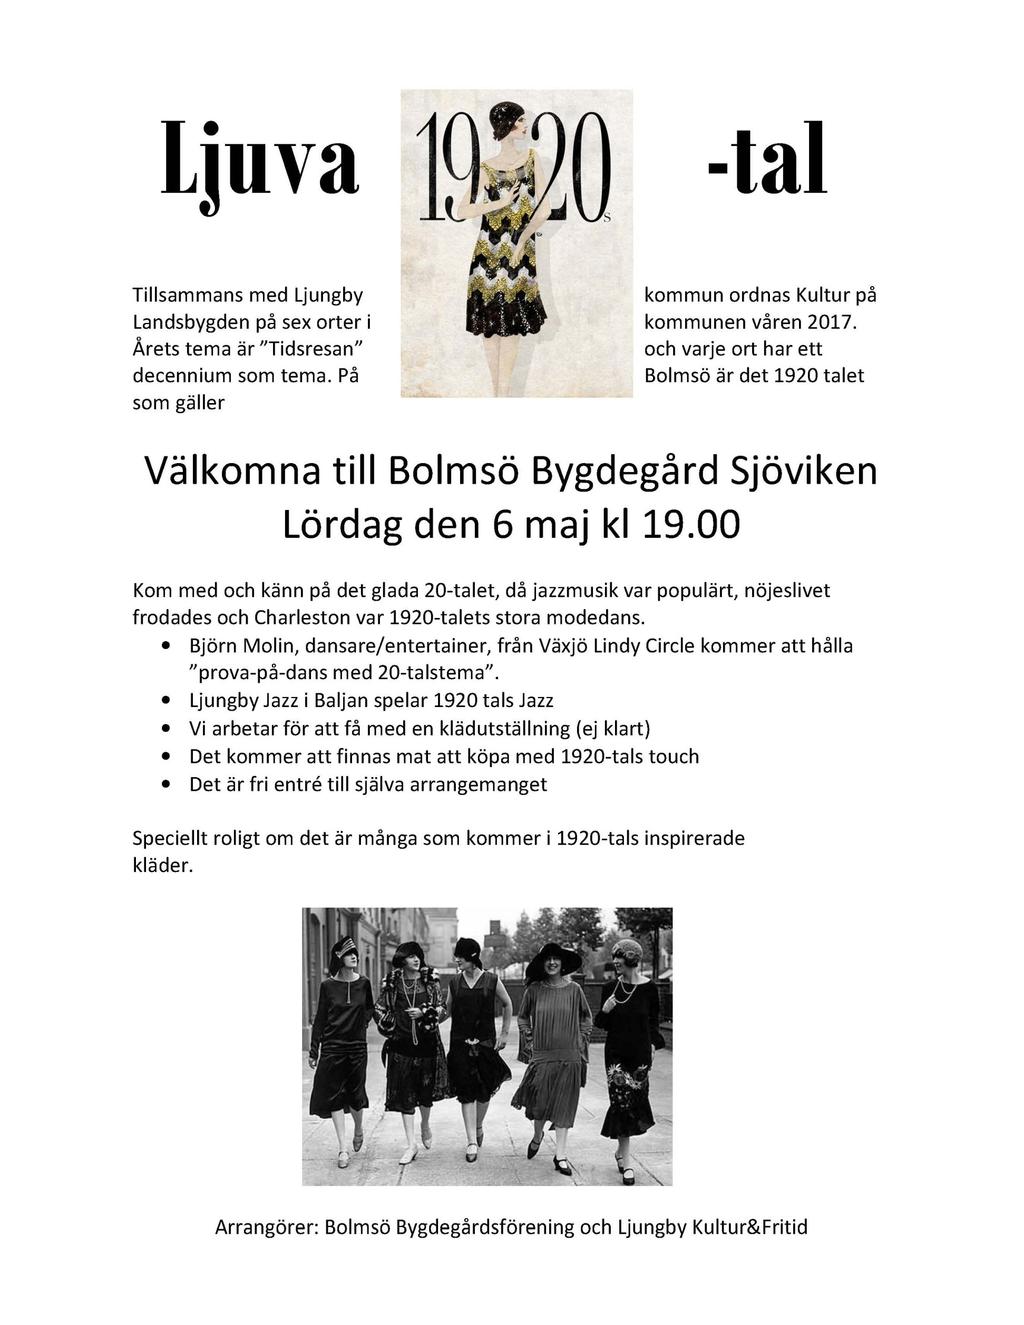 Kyrkligt program maj månad 7 9.30 Gudstjänst, Tannåker, Sjömar. Kaffe i vapenhuset efter gudstjänsten 21 16.